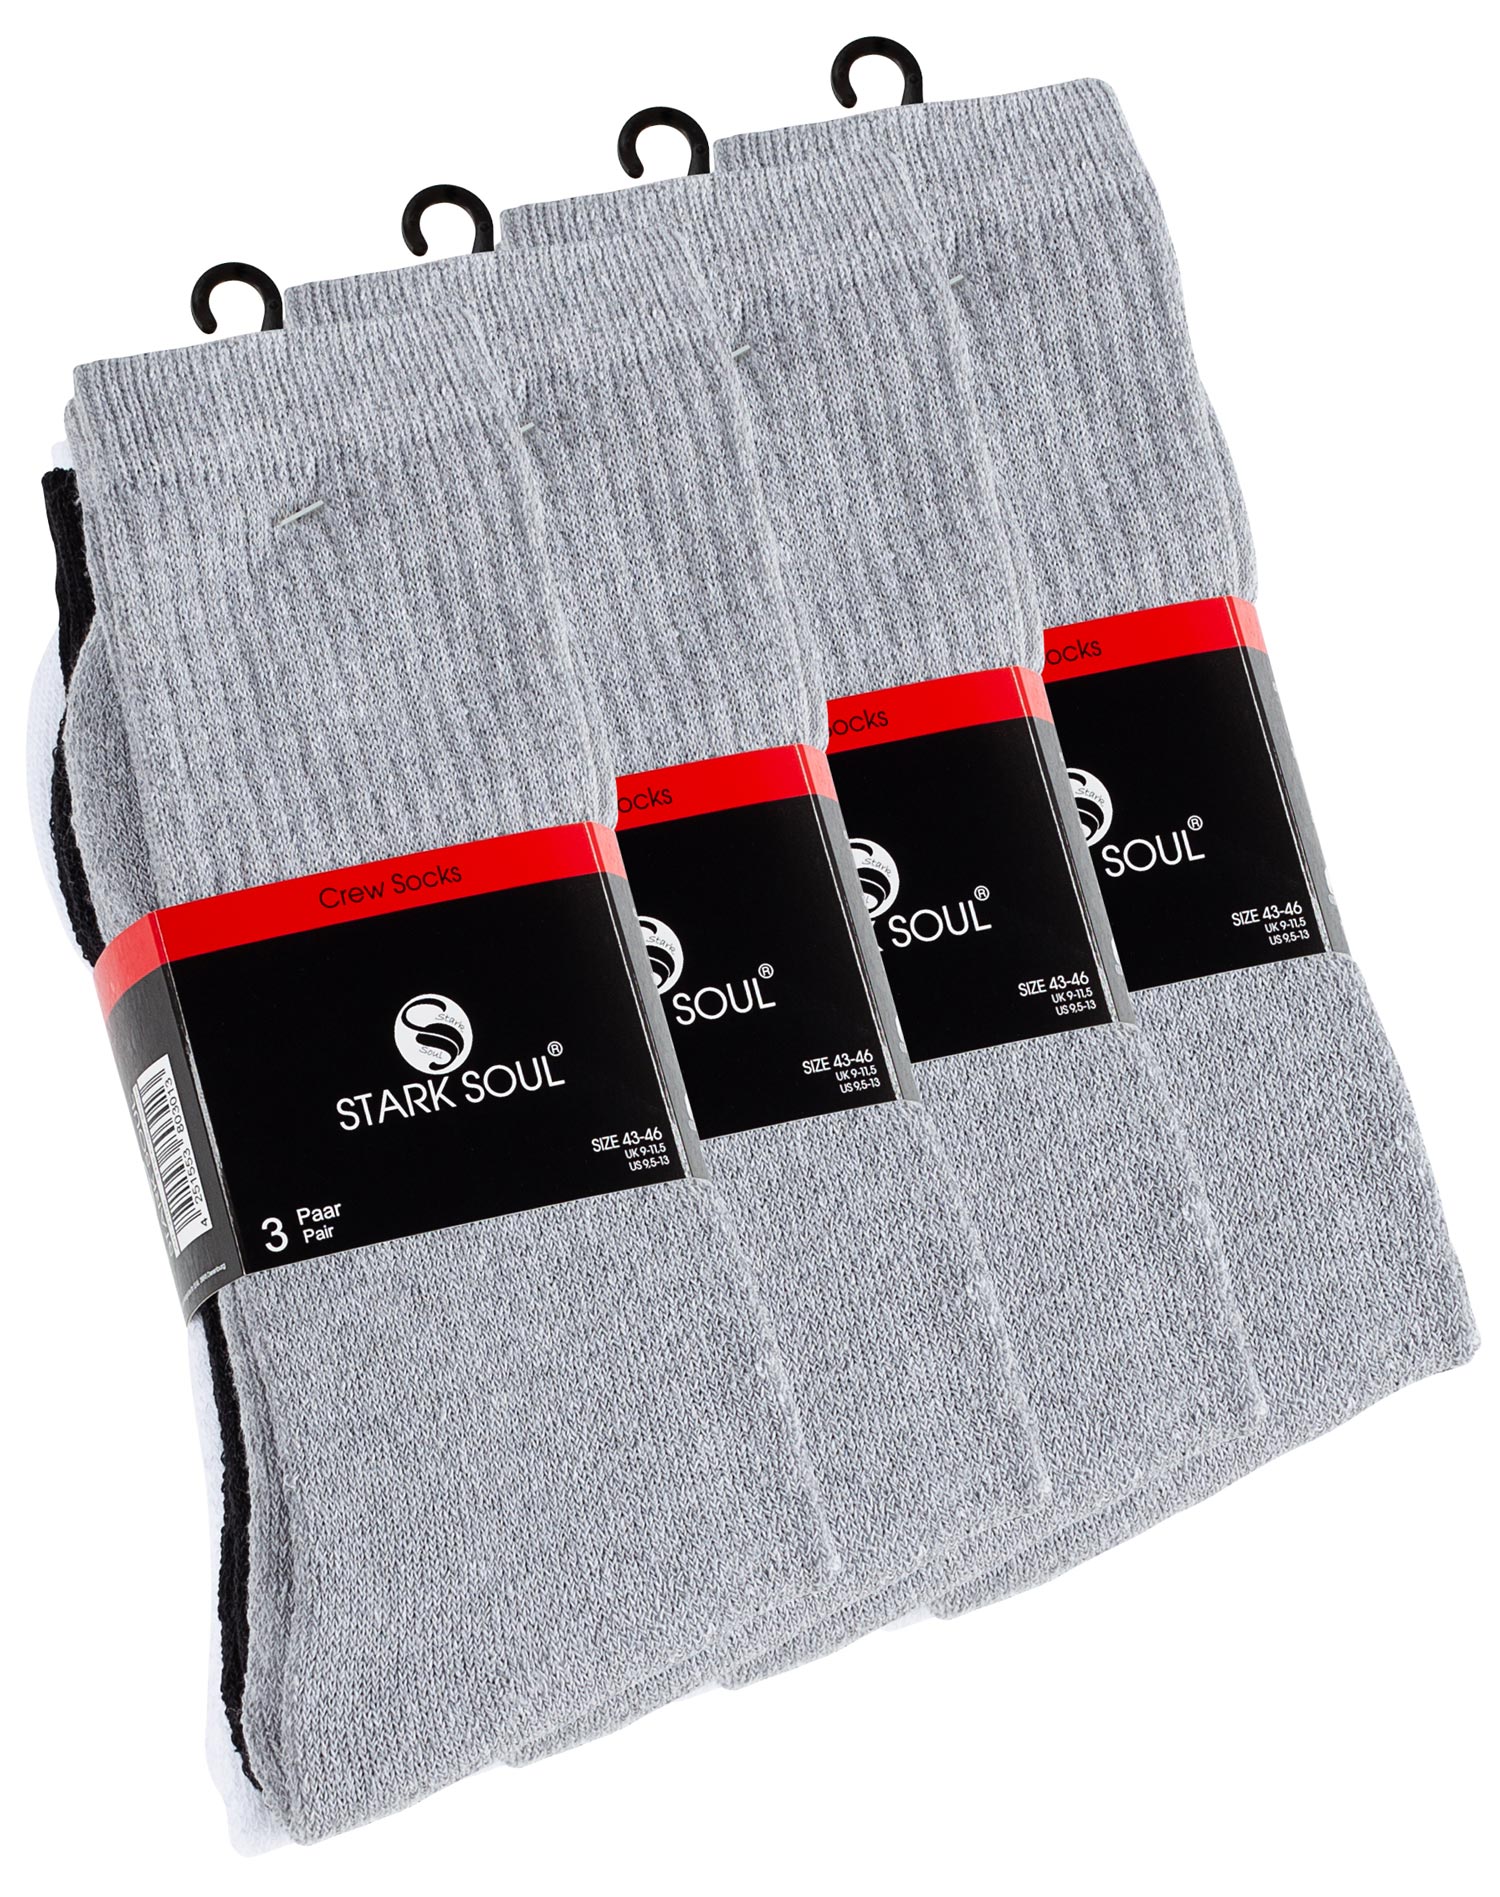 oder weiss, Crew grau Damen - | in | Socken Tennissocken Sockswear schwarz, 6 12 Paar